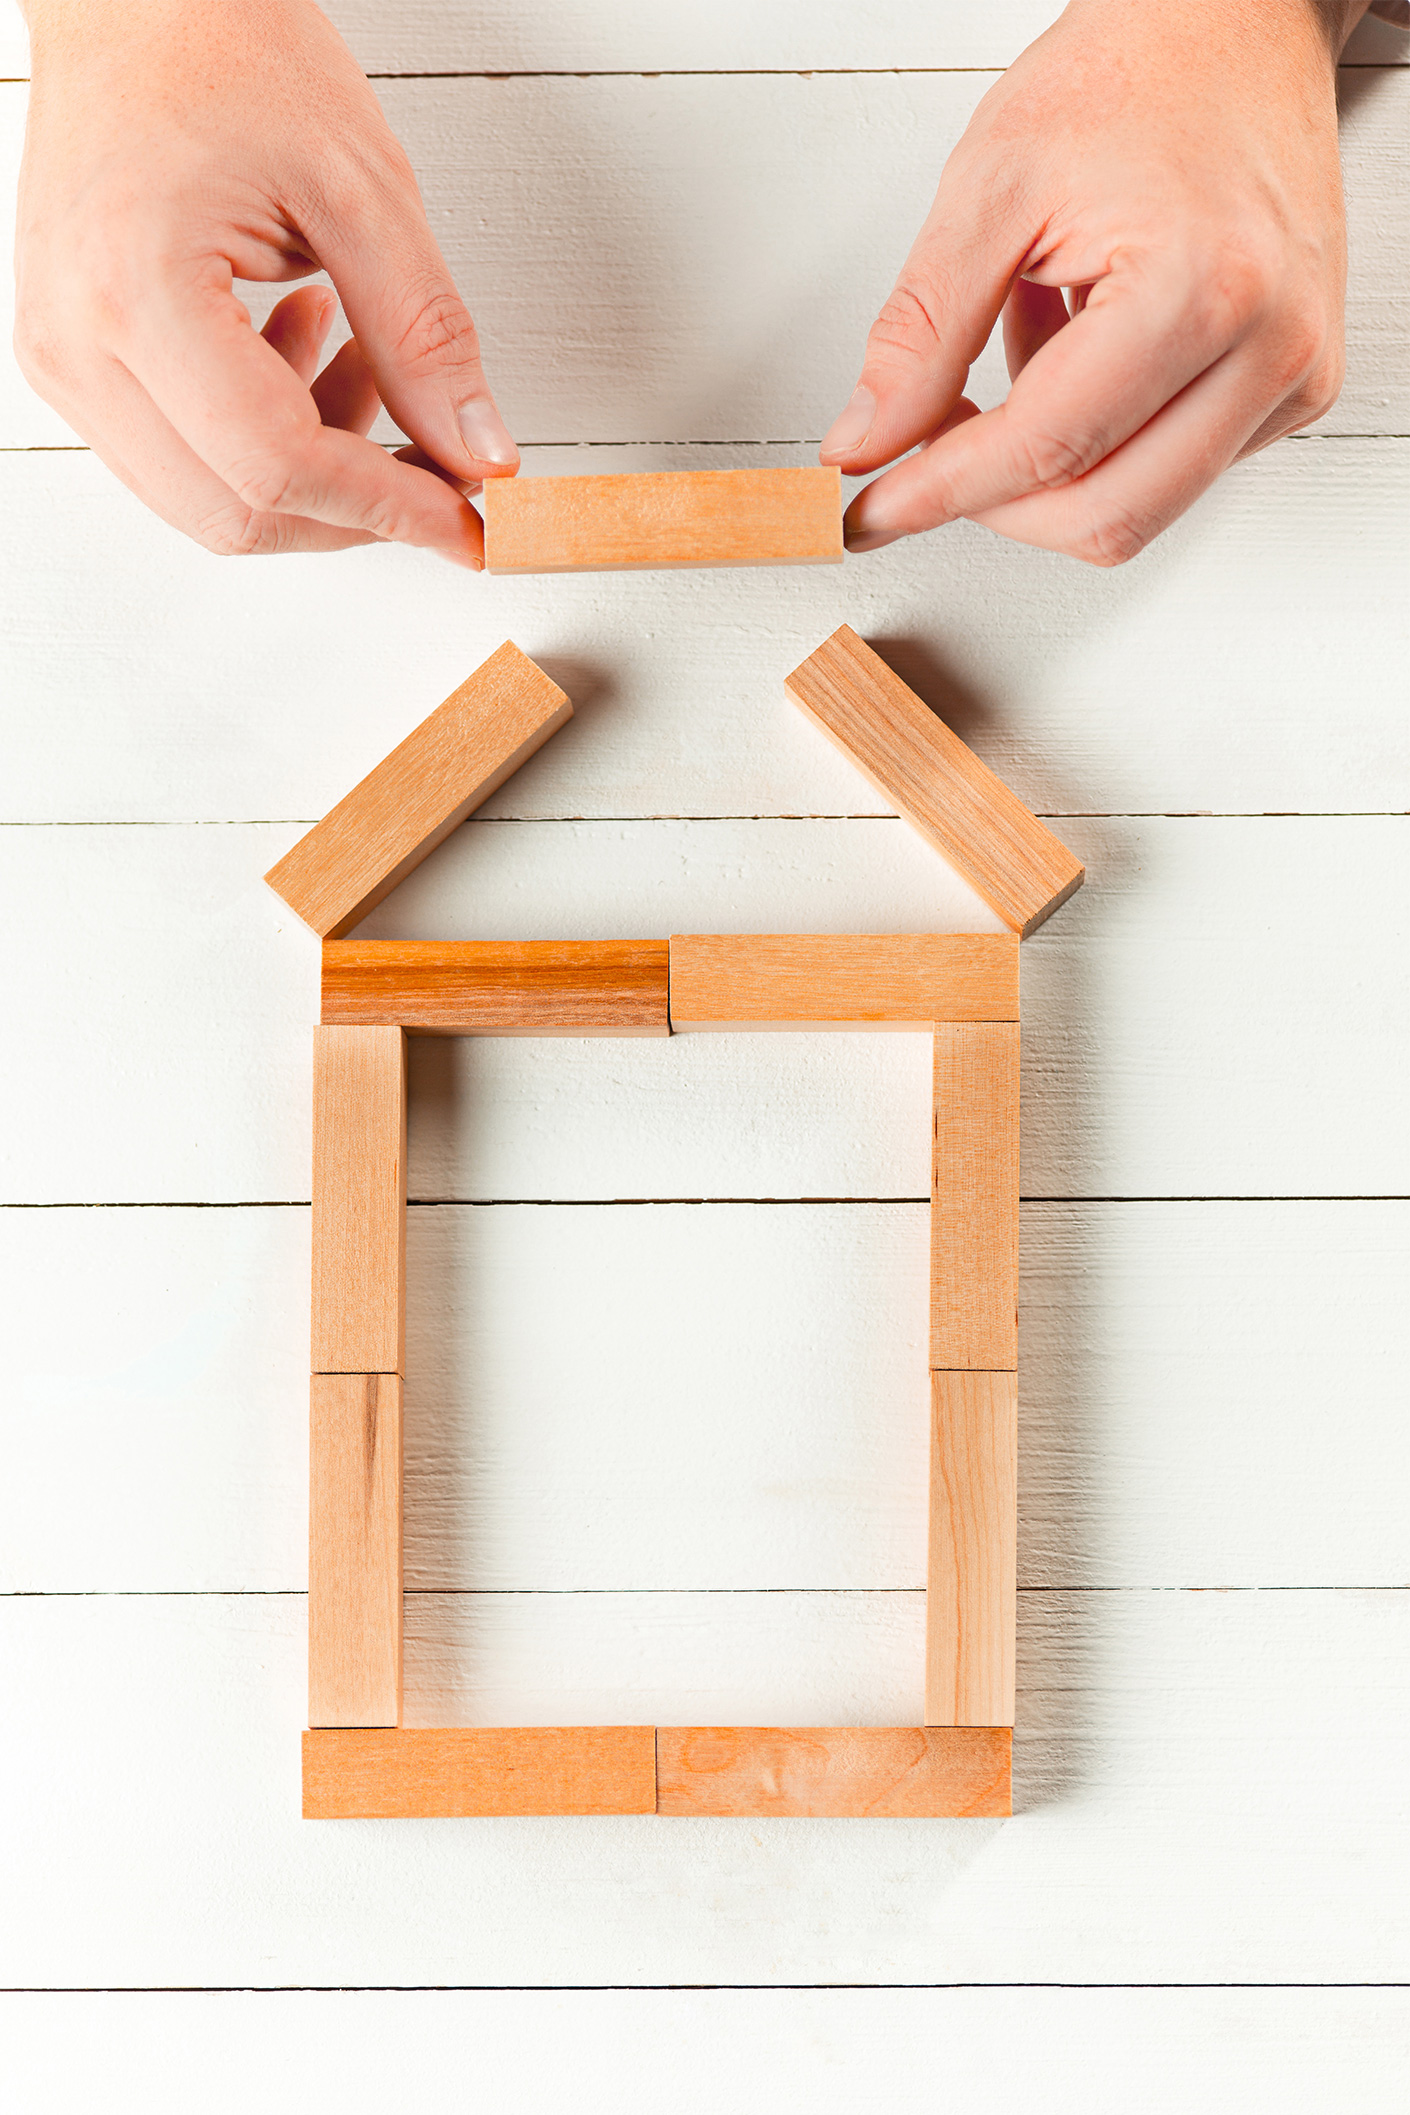 man-wooden-cubes-table-management-concept